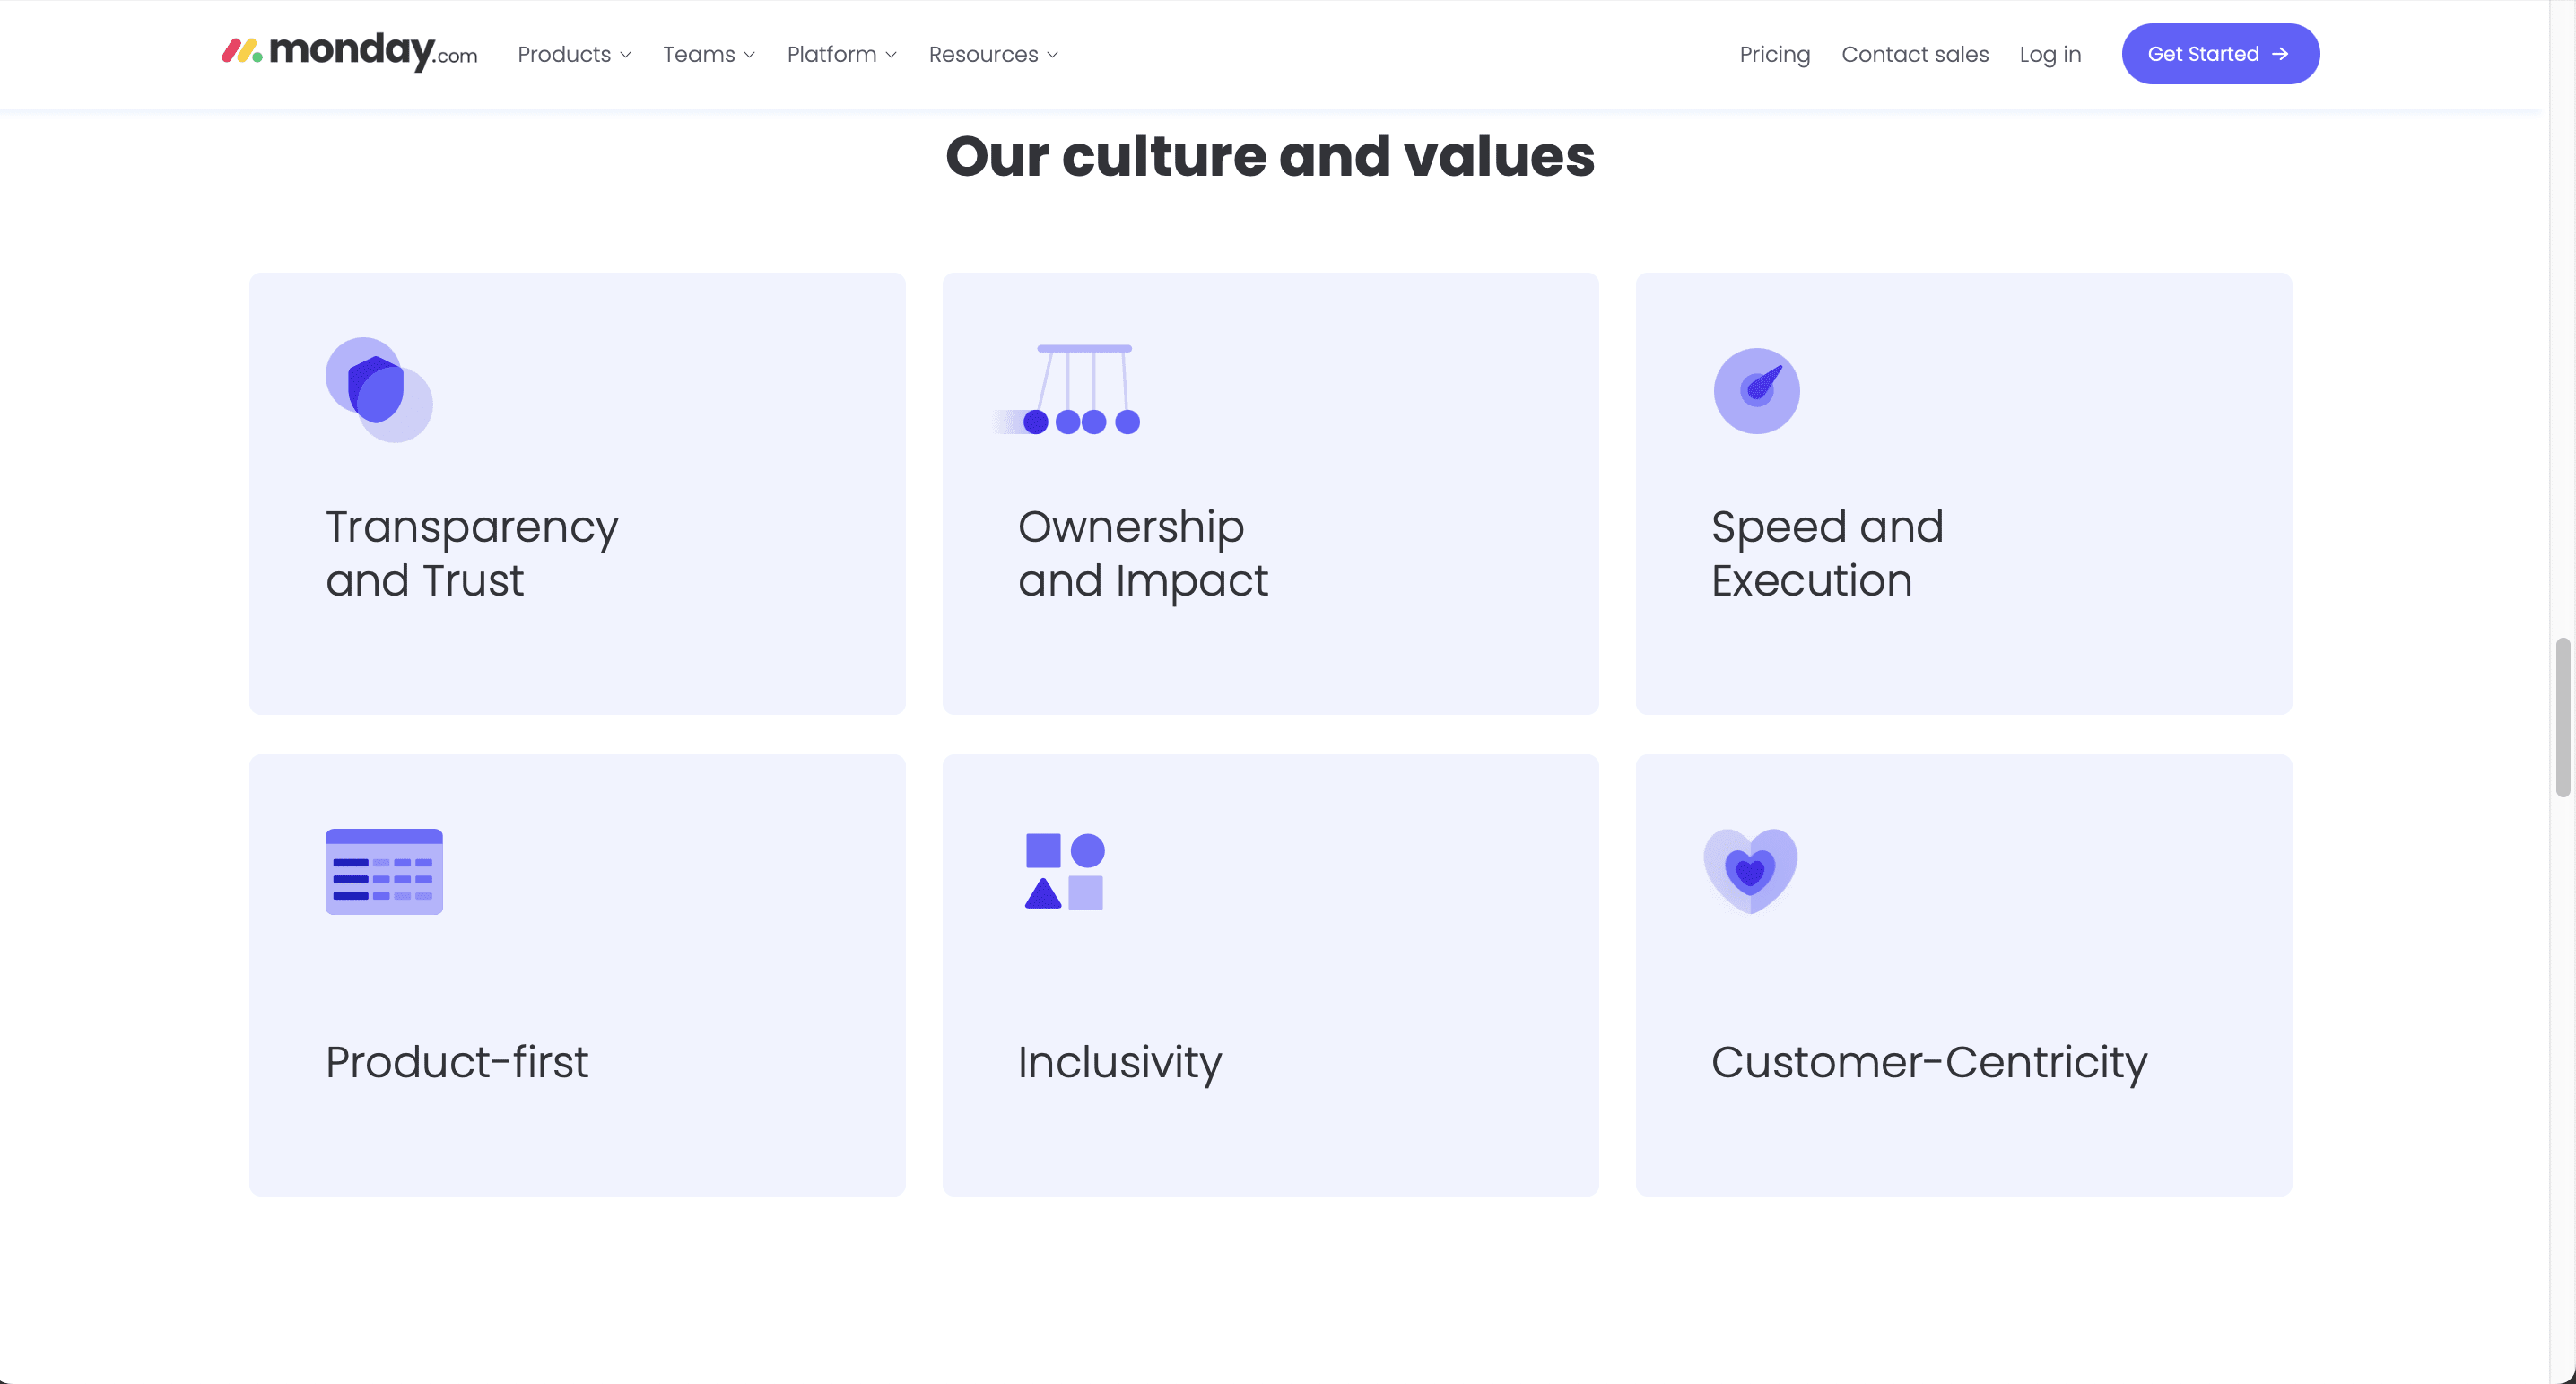 monday.com culture and values